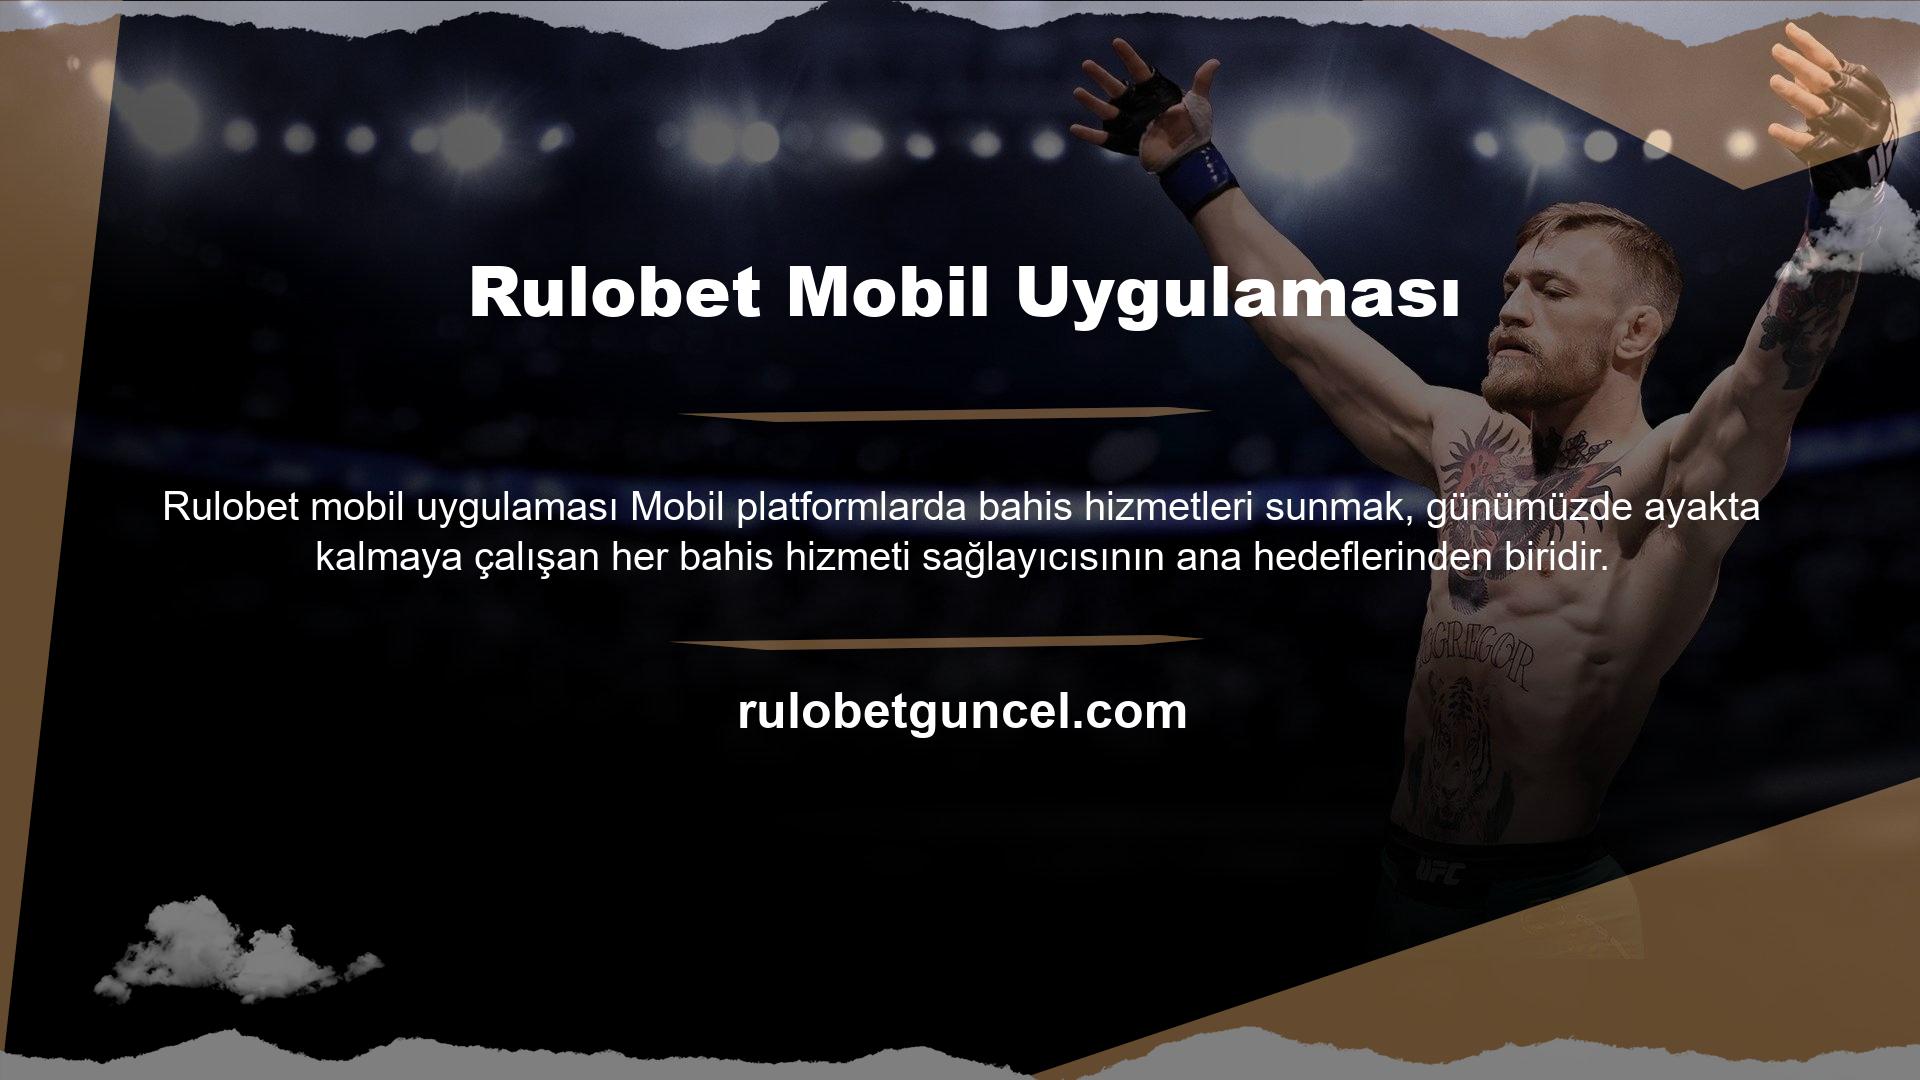 Ancak Rulobet, bunu Rulobet mobil uygulaması aracılığıyla gerçekleştirebilen önde gelen distribütörlerden biridir